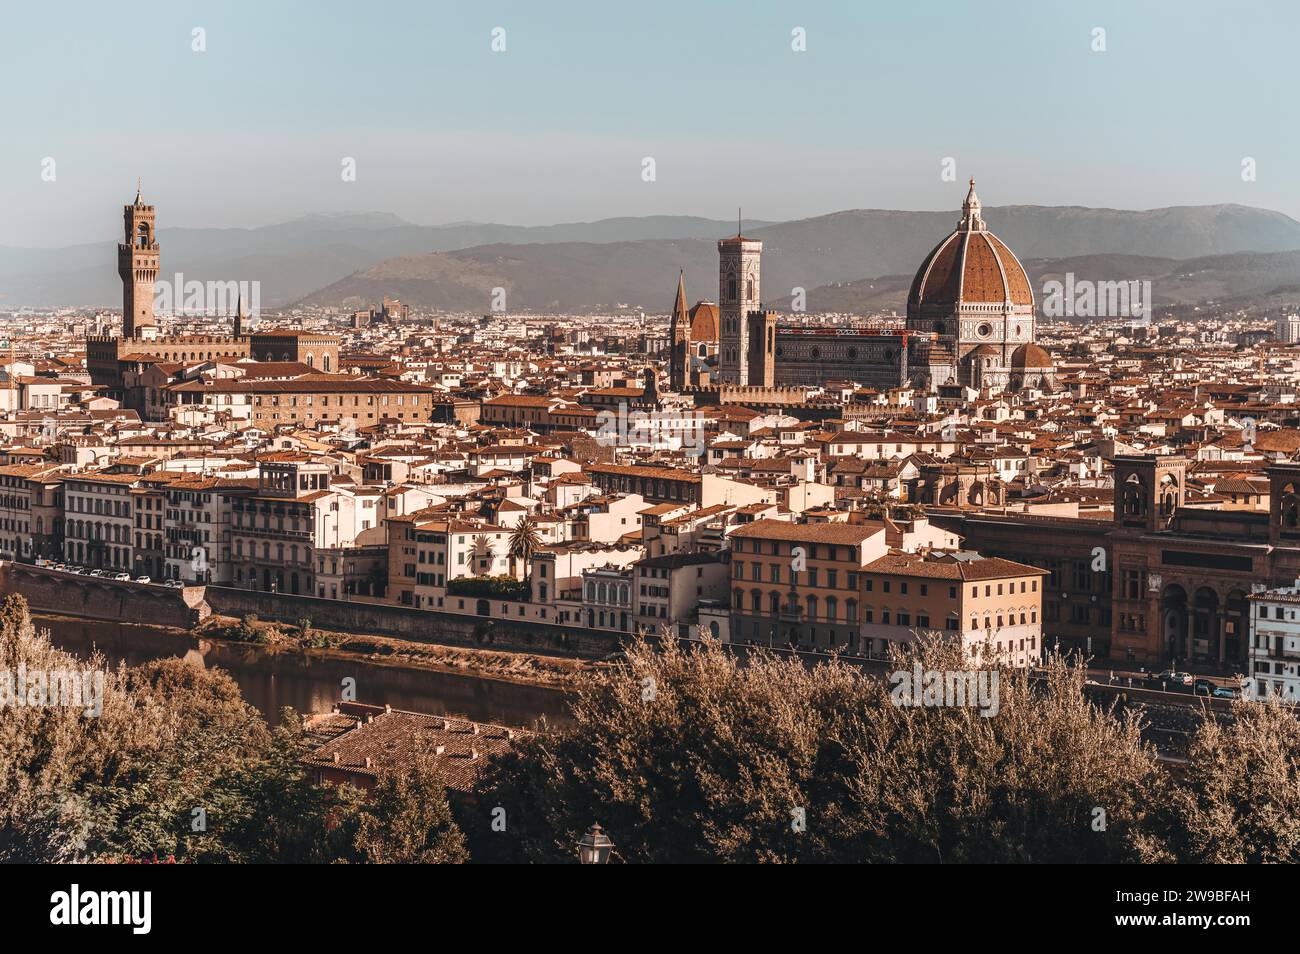 Santa Maria Del Fiore. Panorama. Italien, Florenz. Das Konzept von Tourismus, Reisen, Freizeit. Gemischte Medien Stockfoto